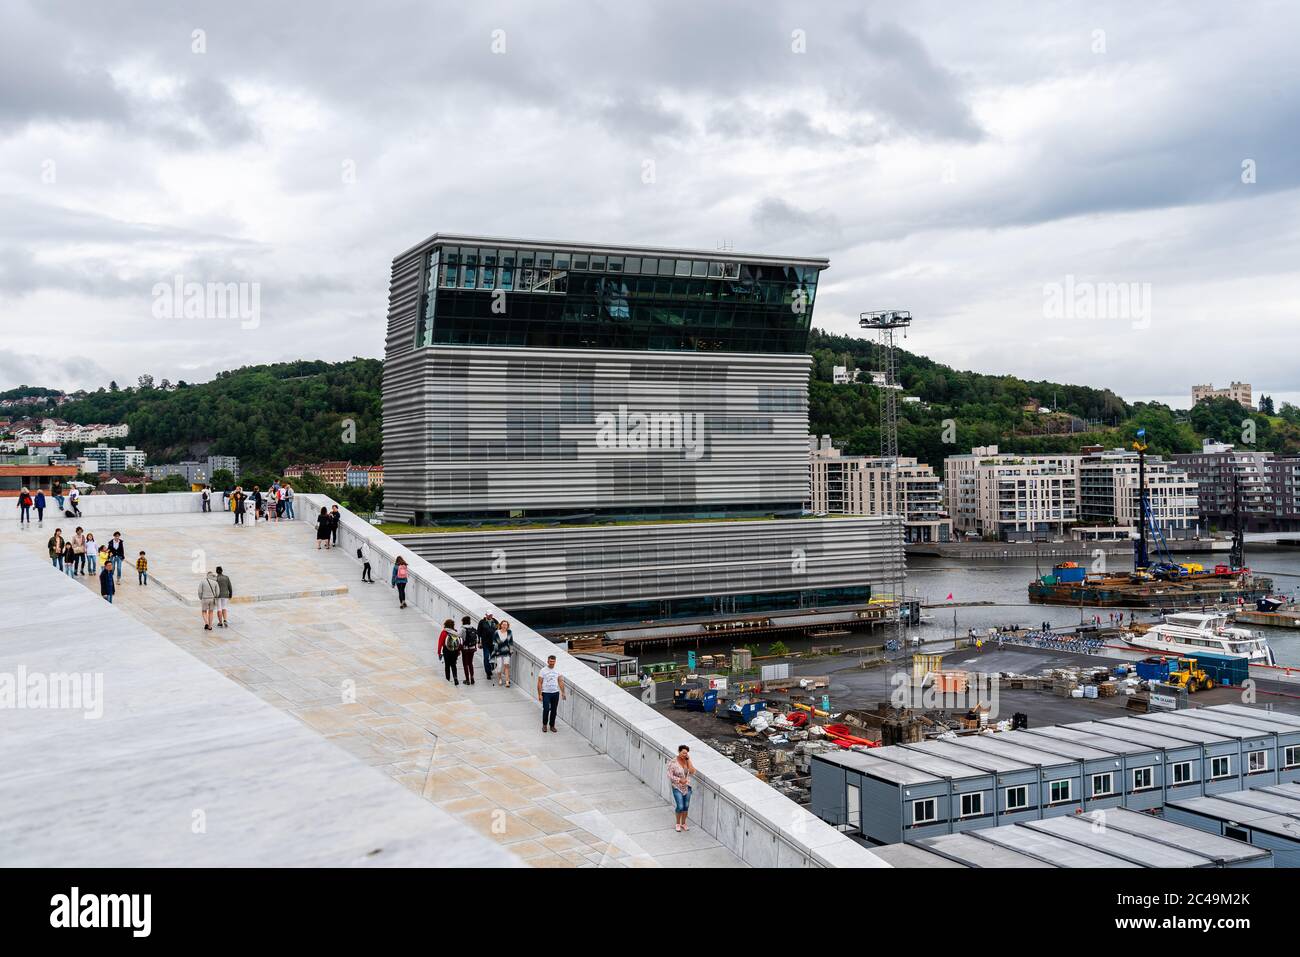 Oslo, Norwegen - 11. August 2019: Außenansicht der Oper und des Munch Museums in Oslo. Neues modernes Gebäude, entworfen von Snohetta Architekten. Stockfoto